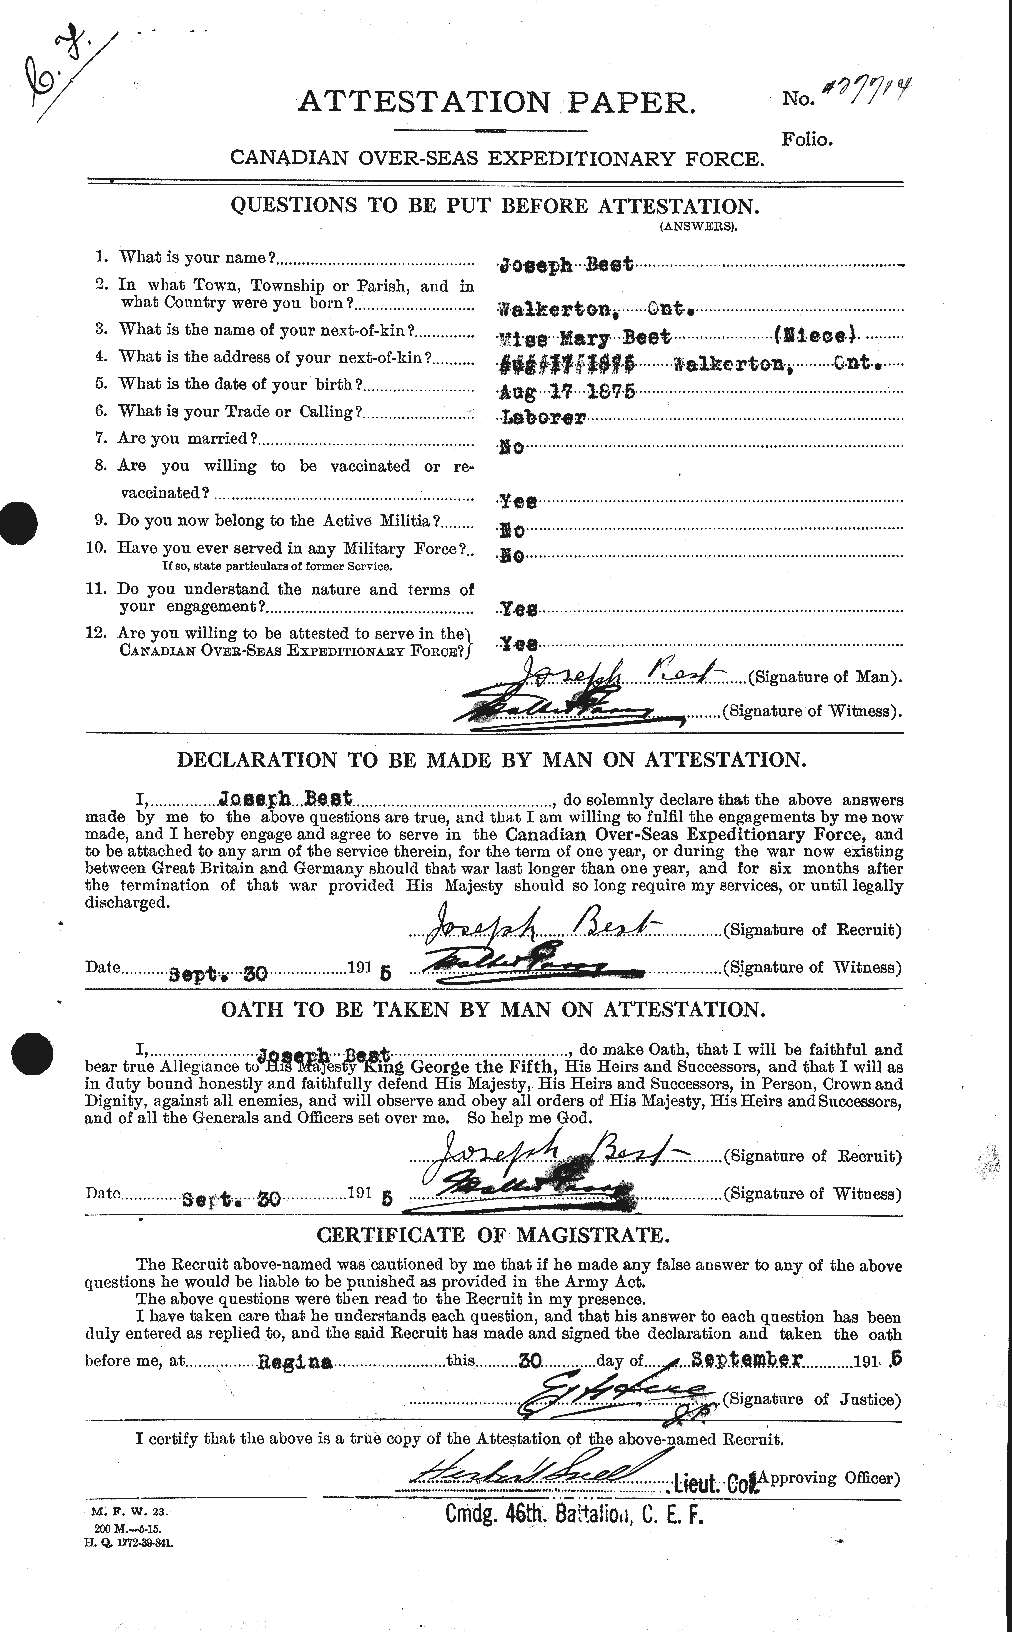 Dossiers du Personnel de la Première Guerre mondiale - CEC 240297a